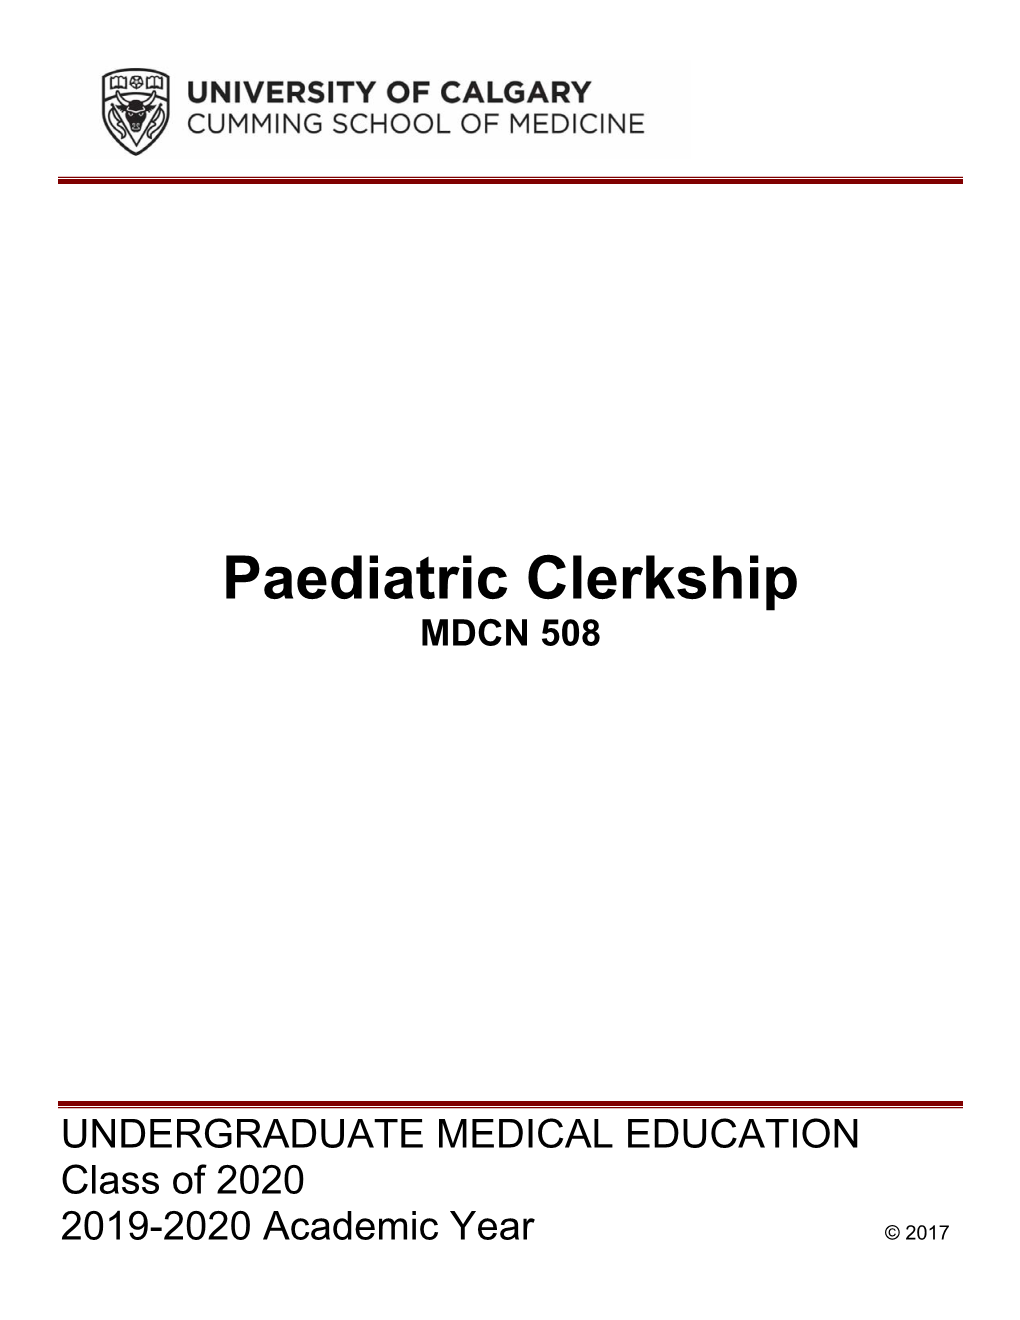 Paediatric Clerkship MDCN 508